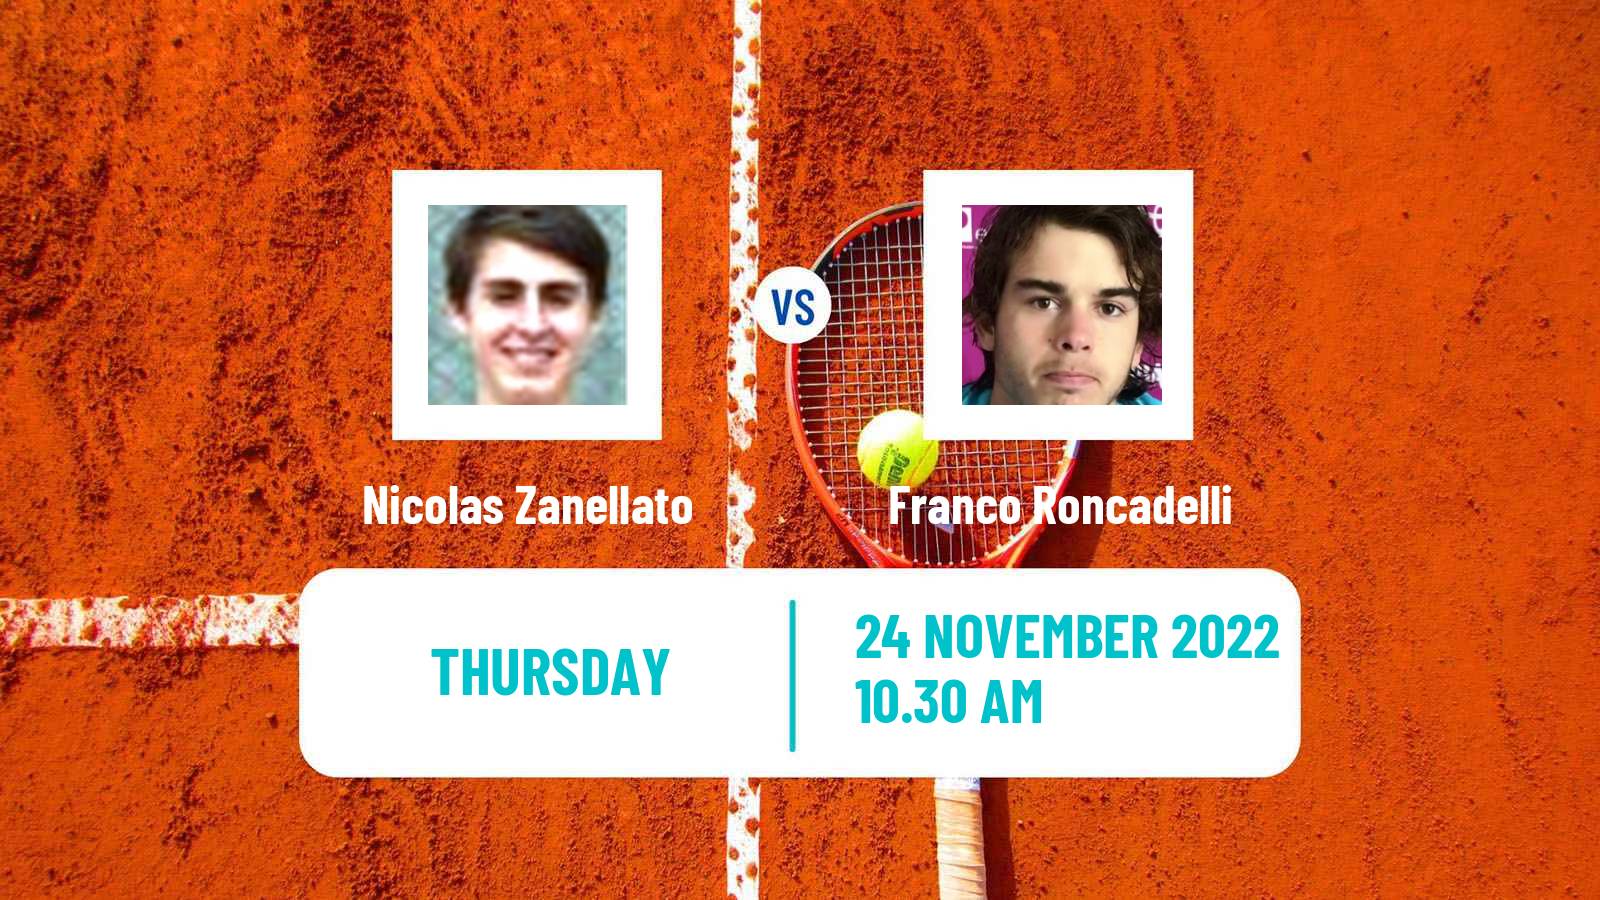 Tennis ITF Tournaments Nicolas Zanellato - Franco Roncadelli